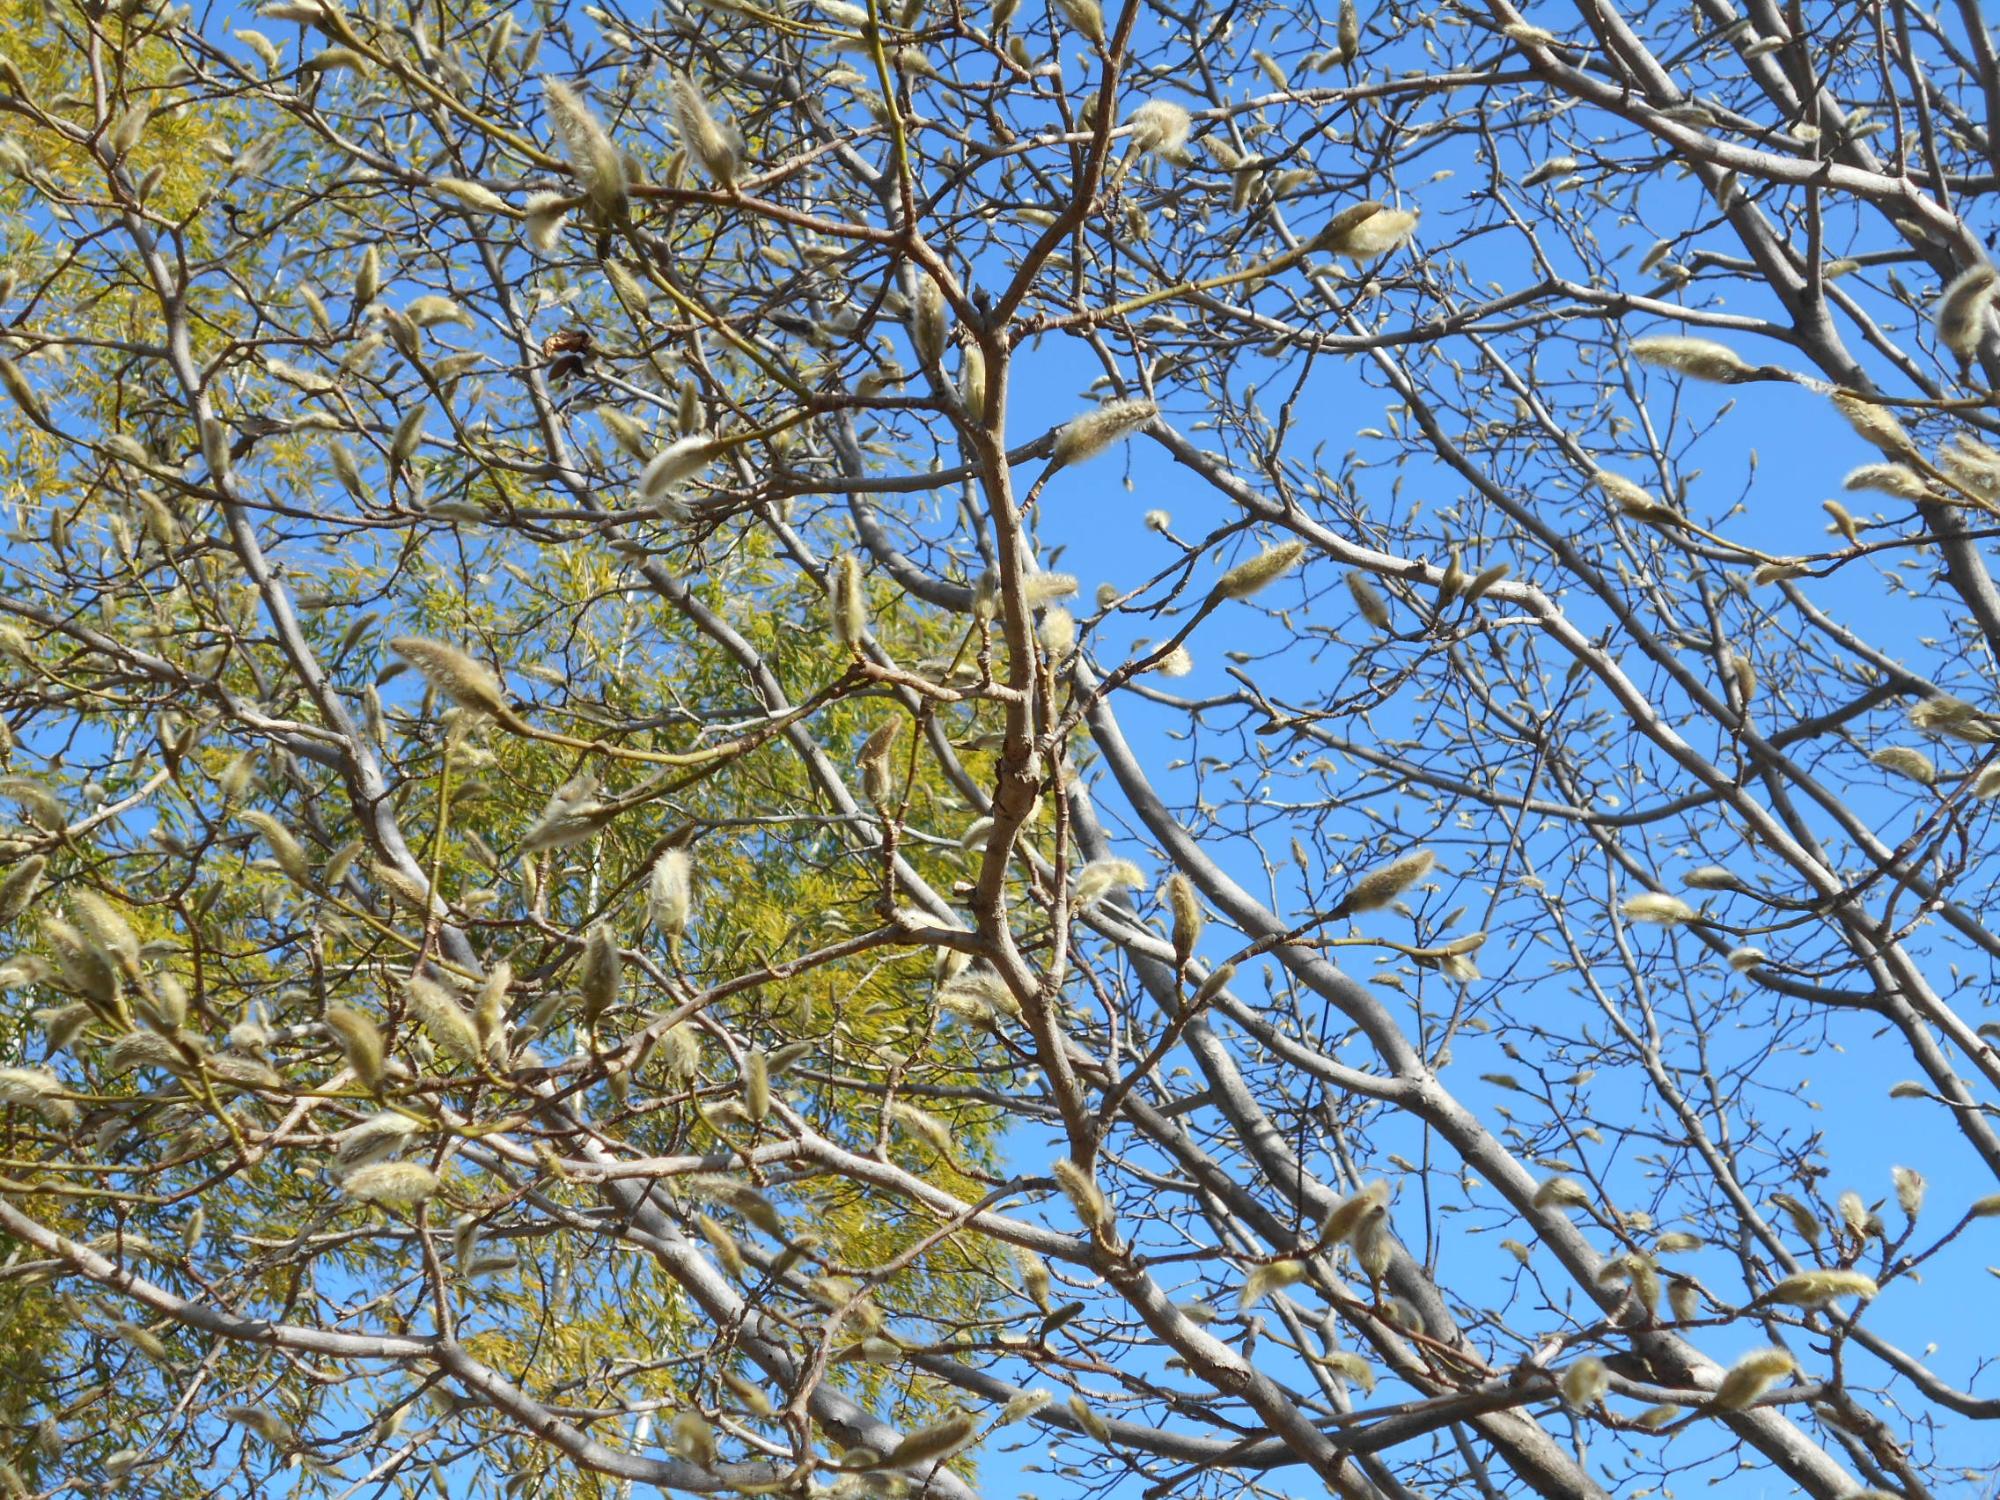 園内のコブシの木の冬芽です。これも冬の景色の一つですね。